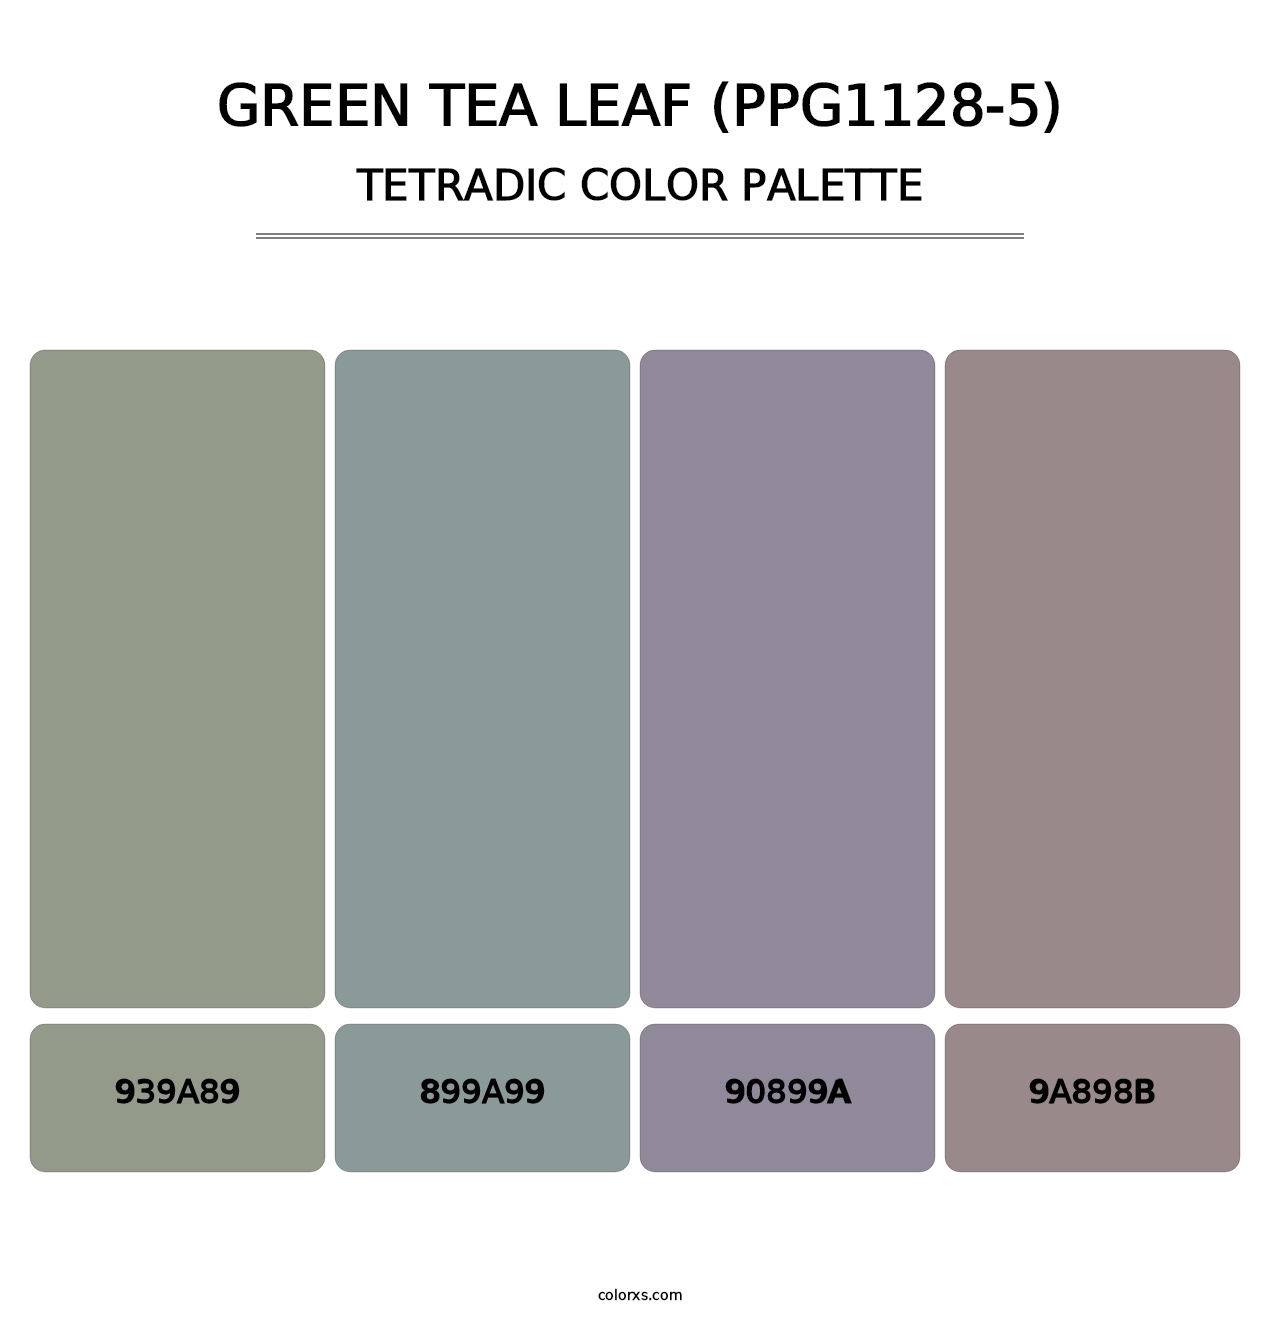 Green Tea Leaf (PPG1128-5) - Tetradic Color Palette